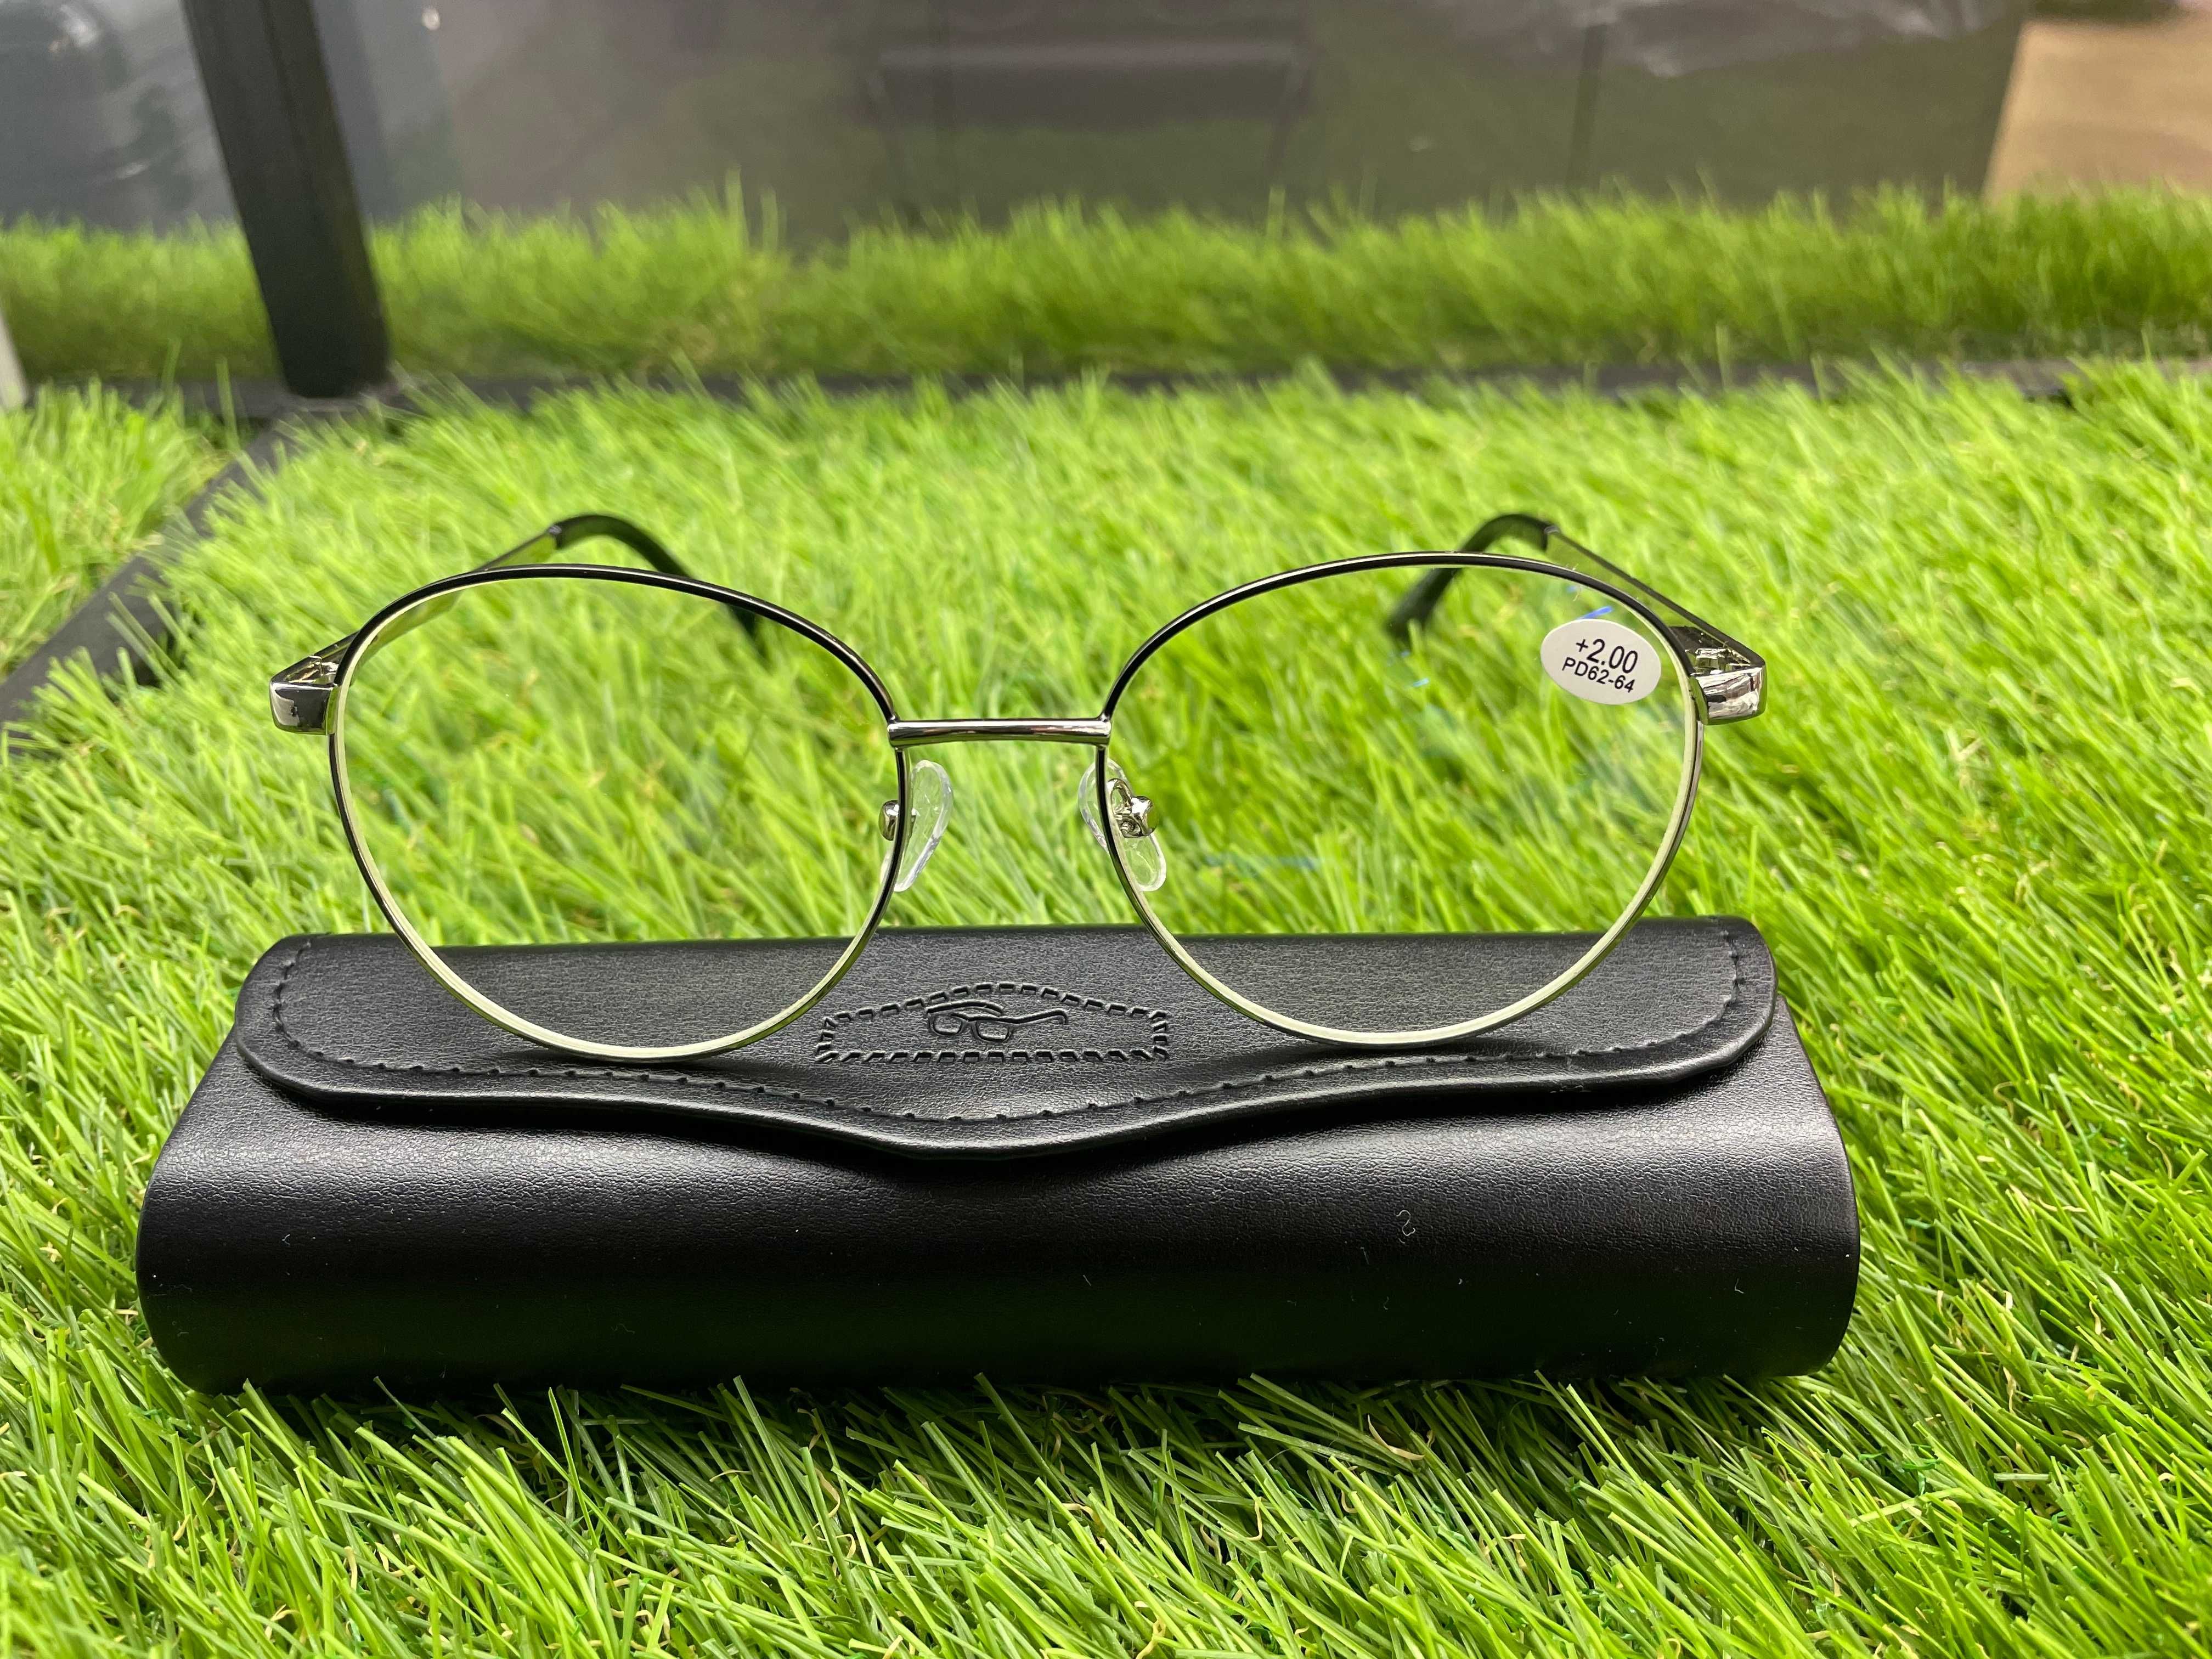 Окуляри/Жіночі окуляри/Очки/Женские очки/Очки для зрения